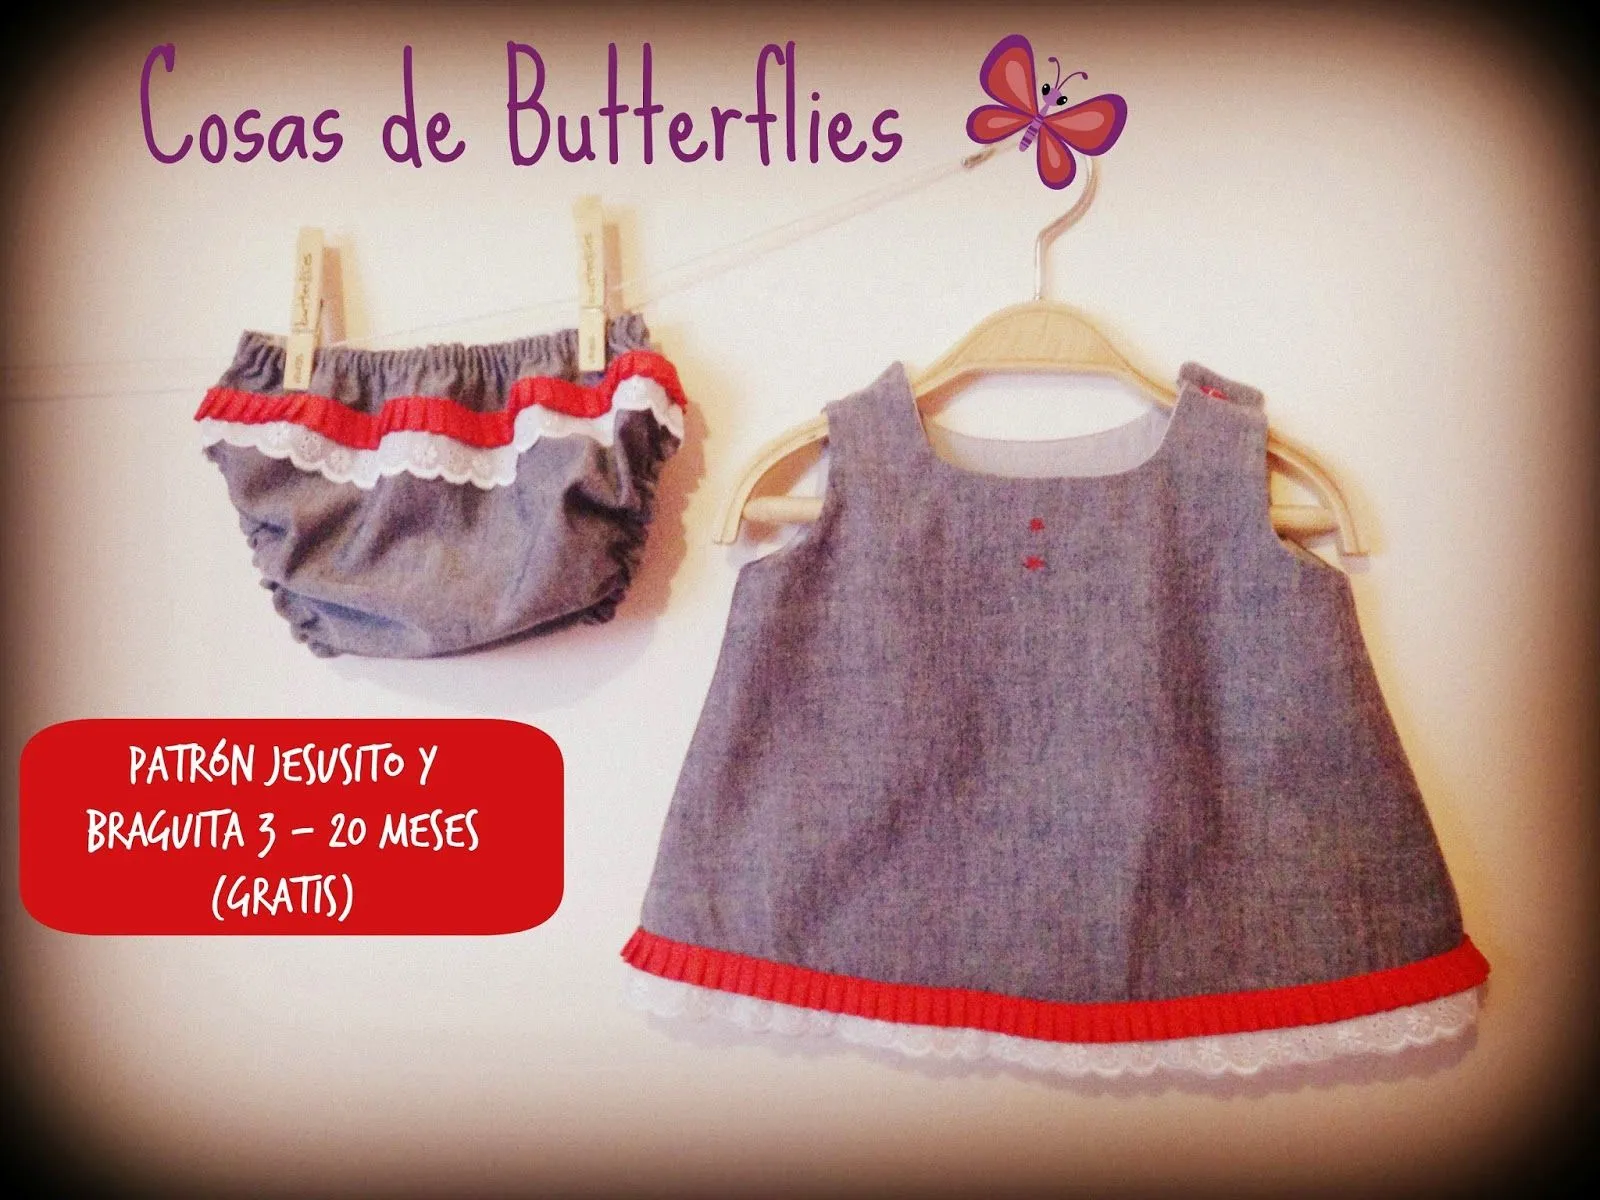 Cosas de Butterflies: Patrón gratis vestido bebé (jesusito) tallas 3-20  meses